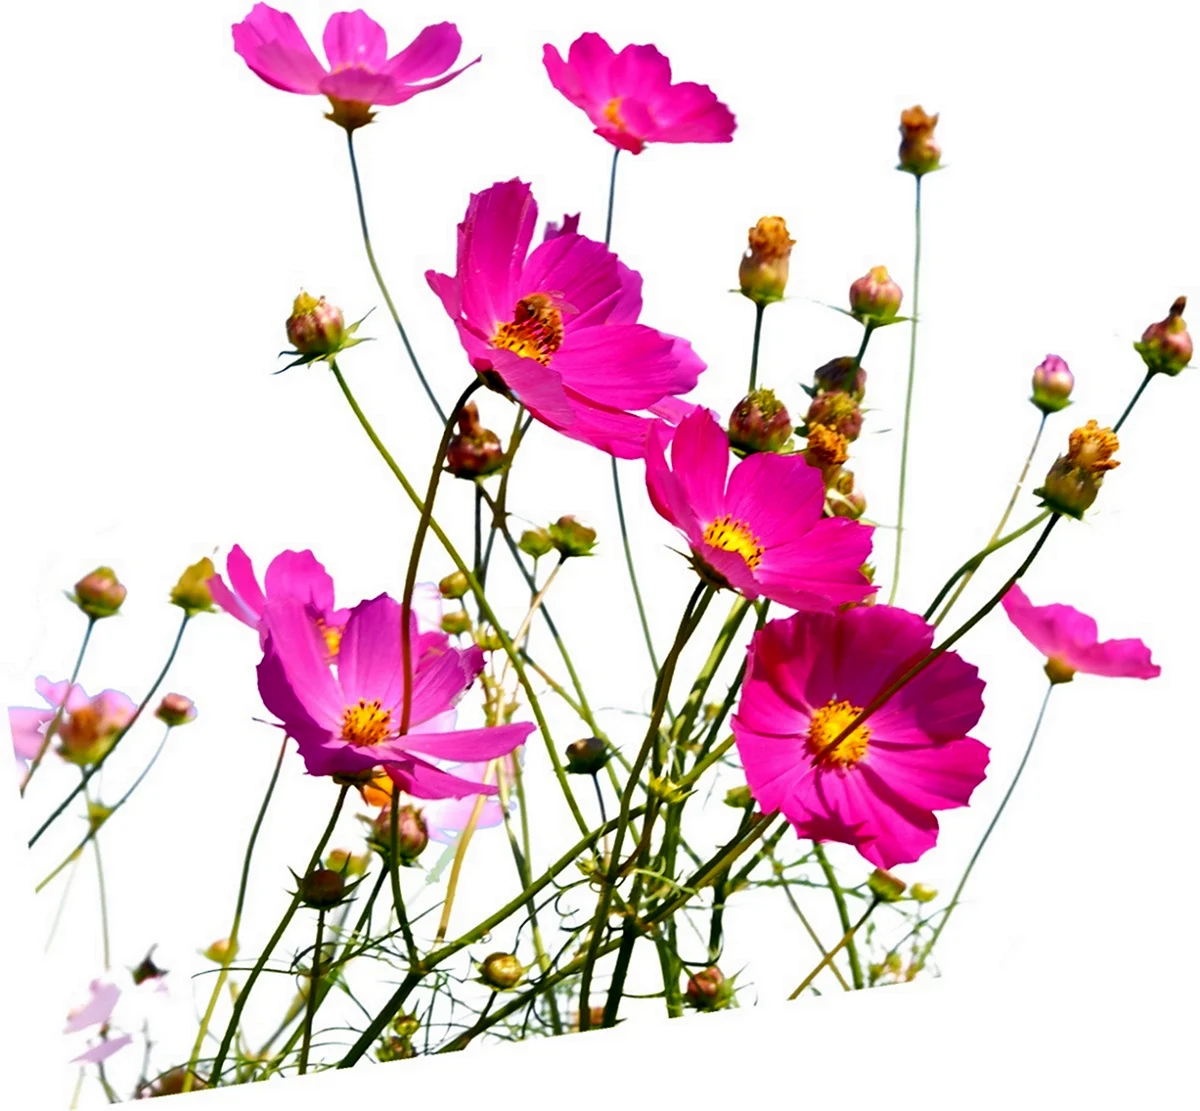 Полевые цветы на прозрачном фоне